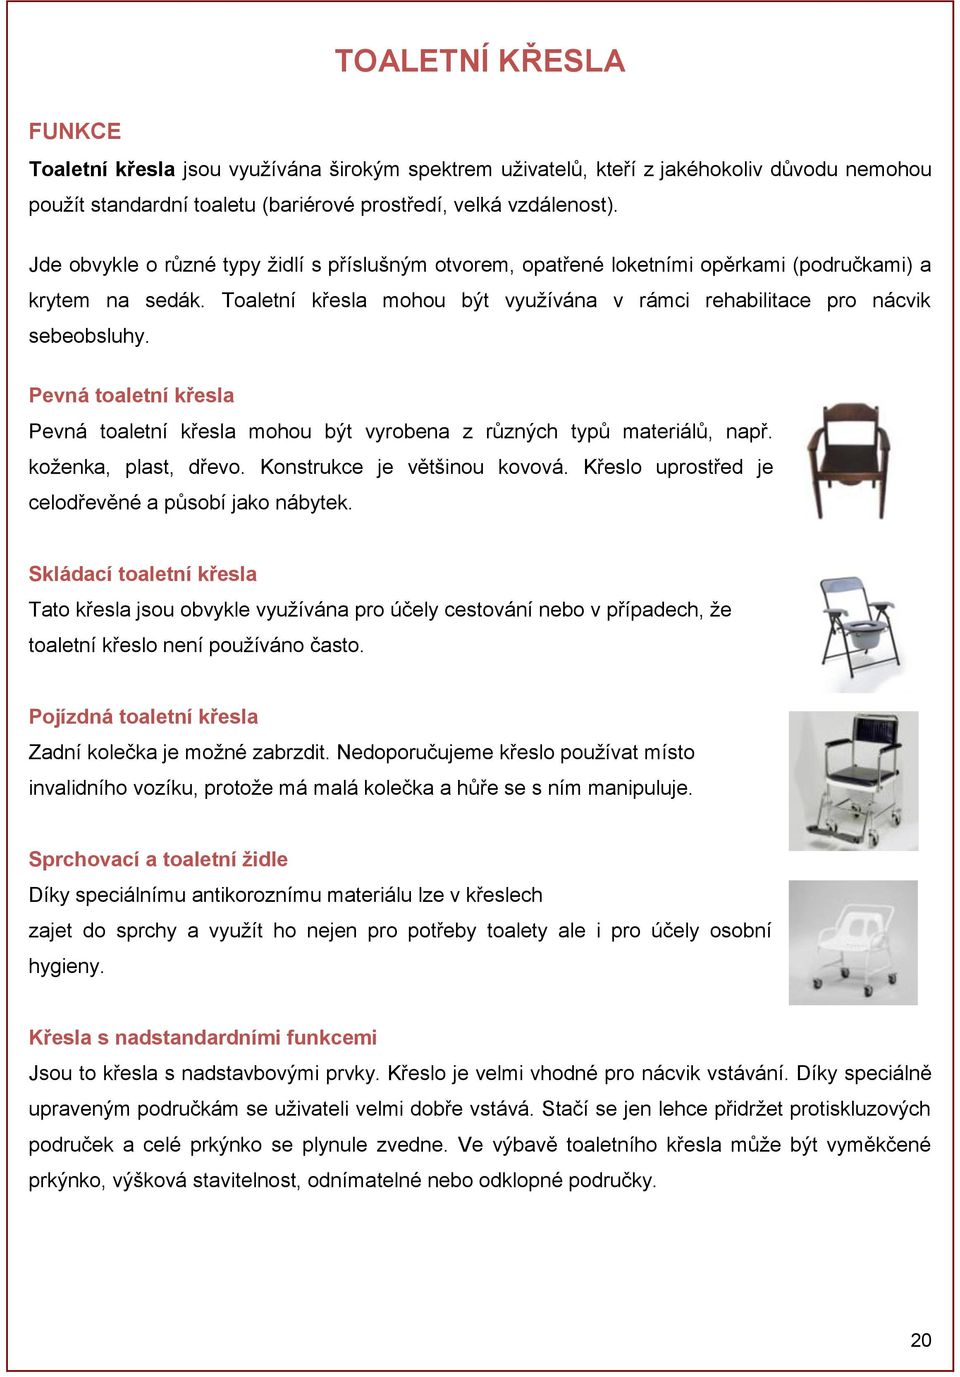 Pevná toaletní křesla Pevná toaletní křesla mohou být vyrobena z různých typů materiálů, např. koženka, plast, dřevo. Konstrukce je většinou kovová.